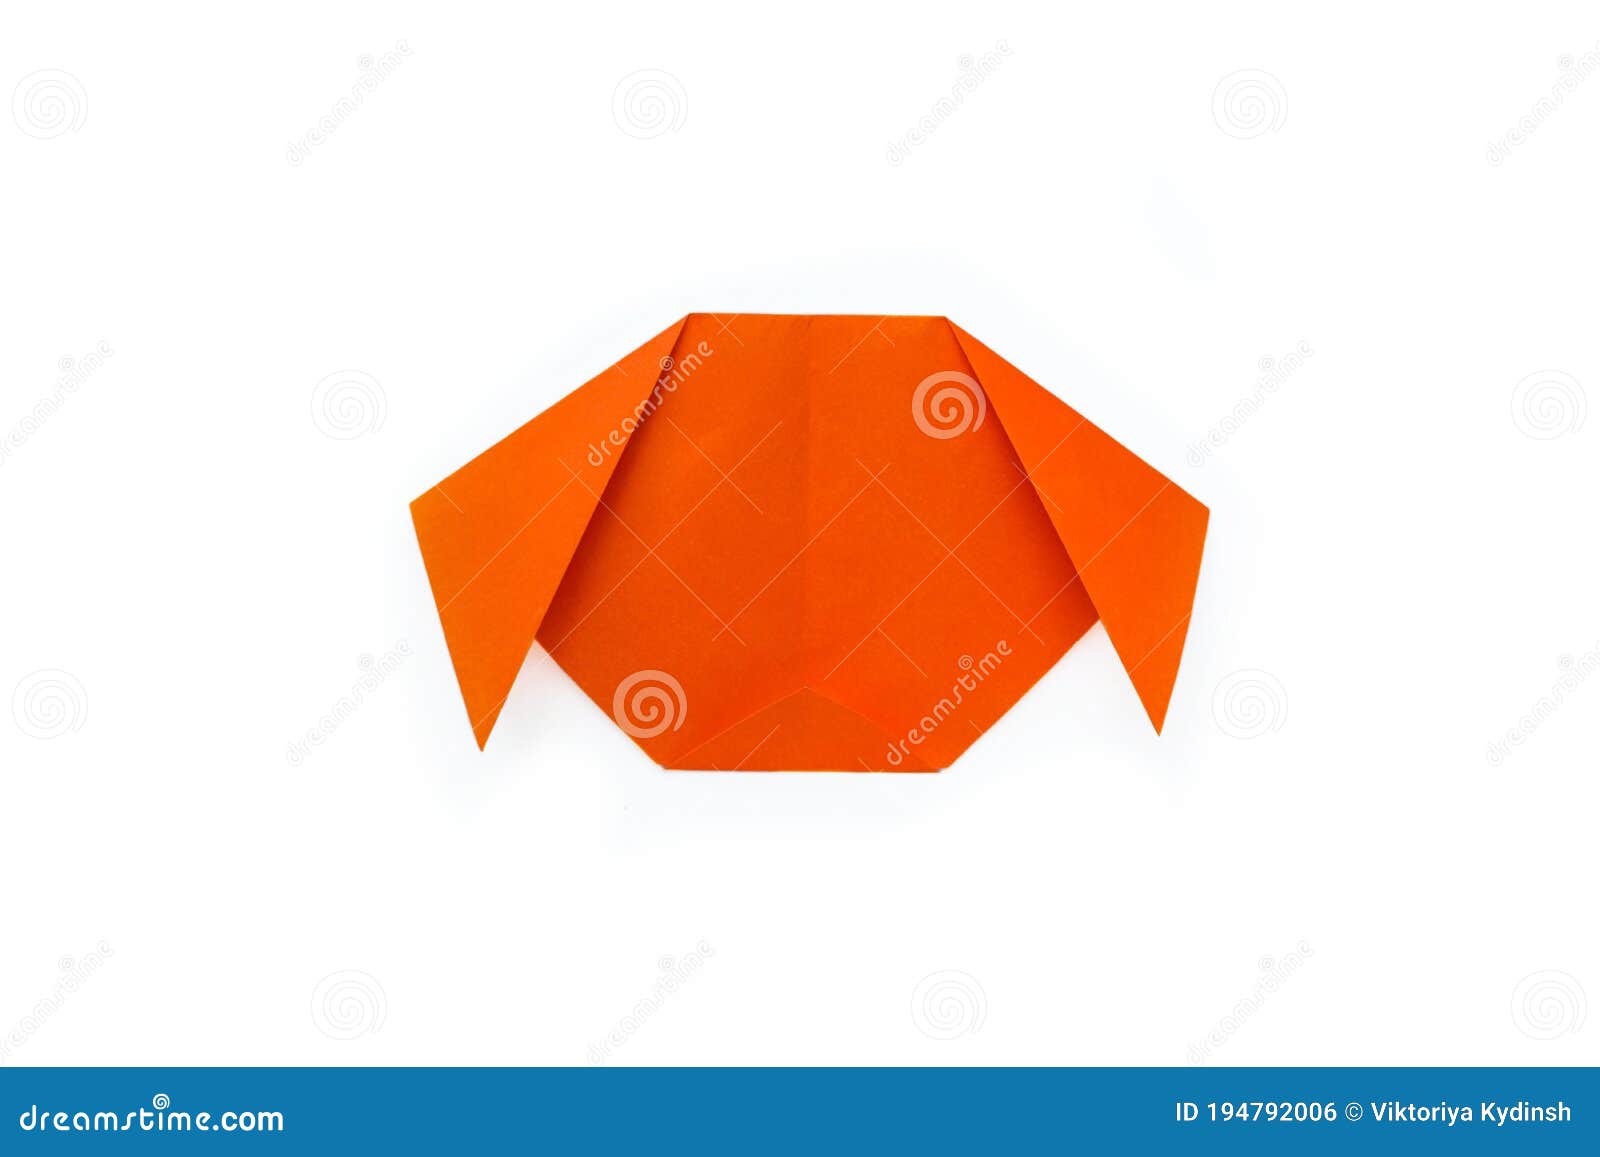 Los 9 colores que mejor combinan con el naranja